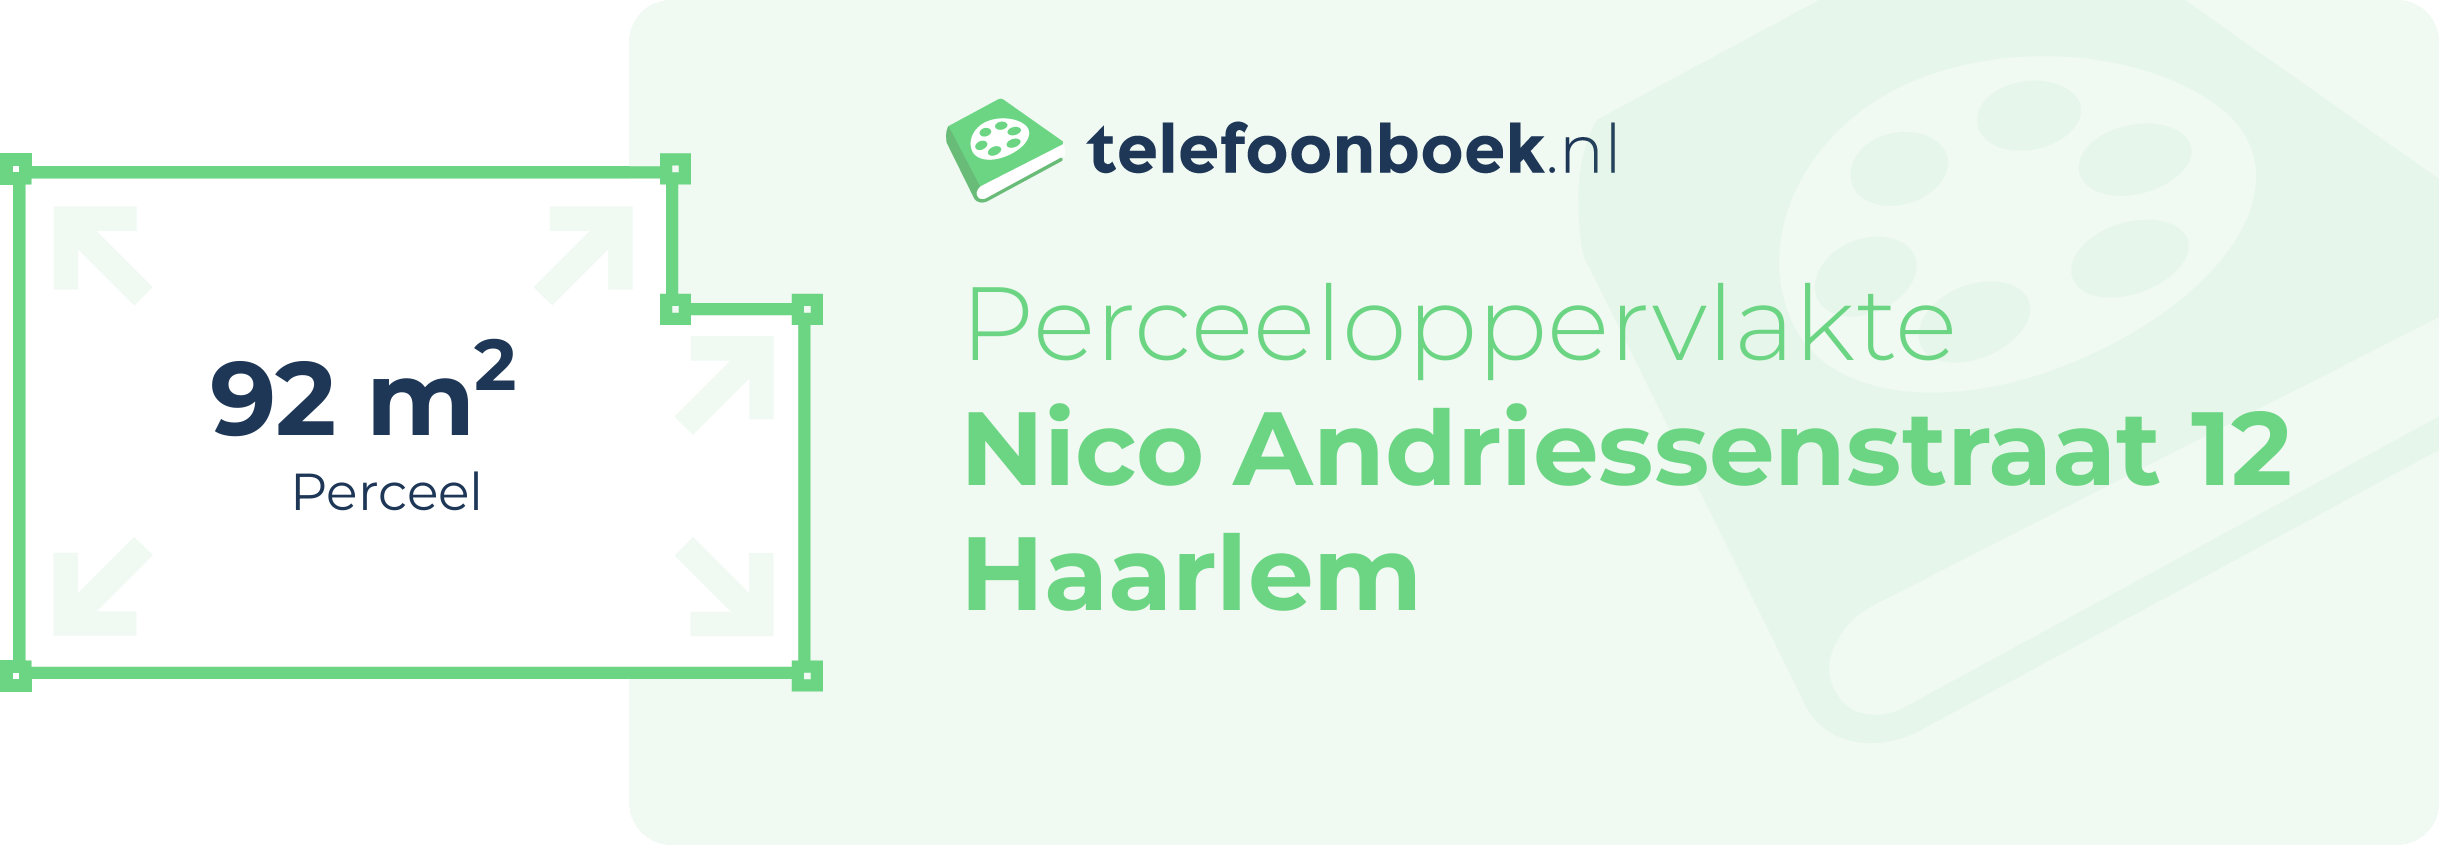 Perceeloppervlakte Nico Andriessenstraat 12 Haarlem